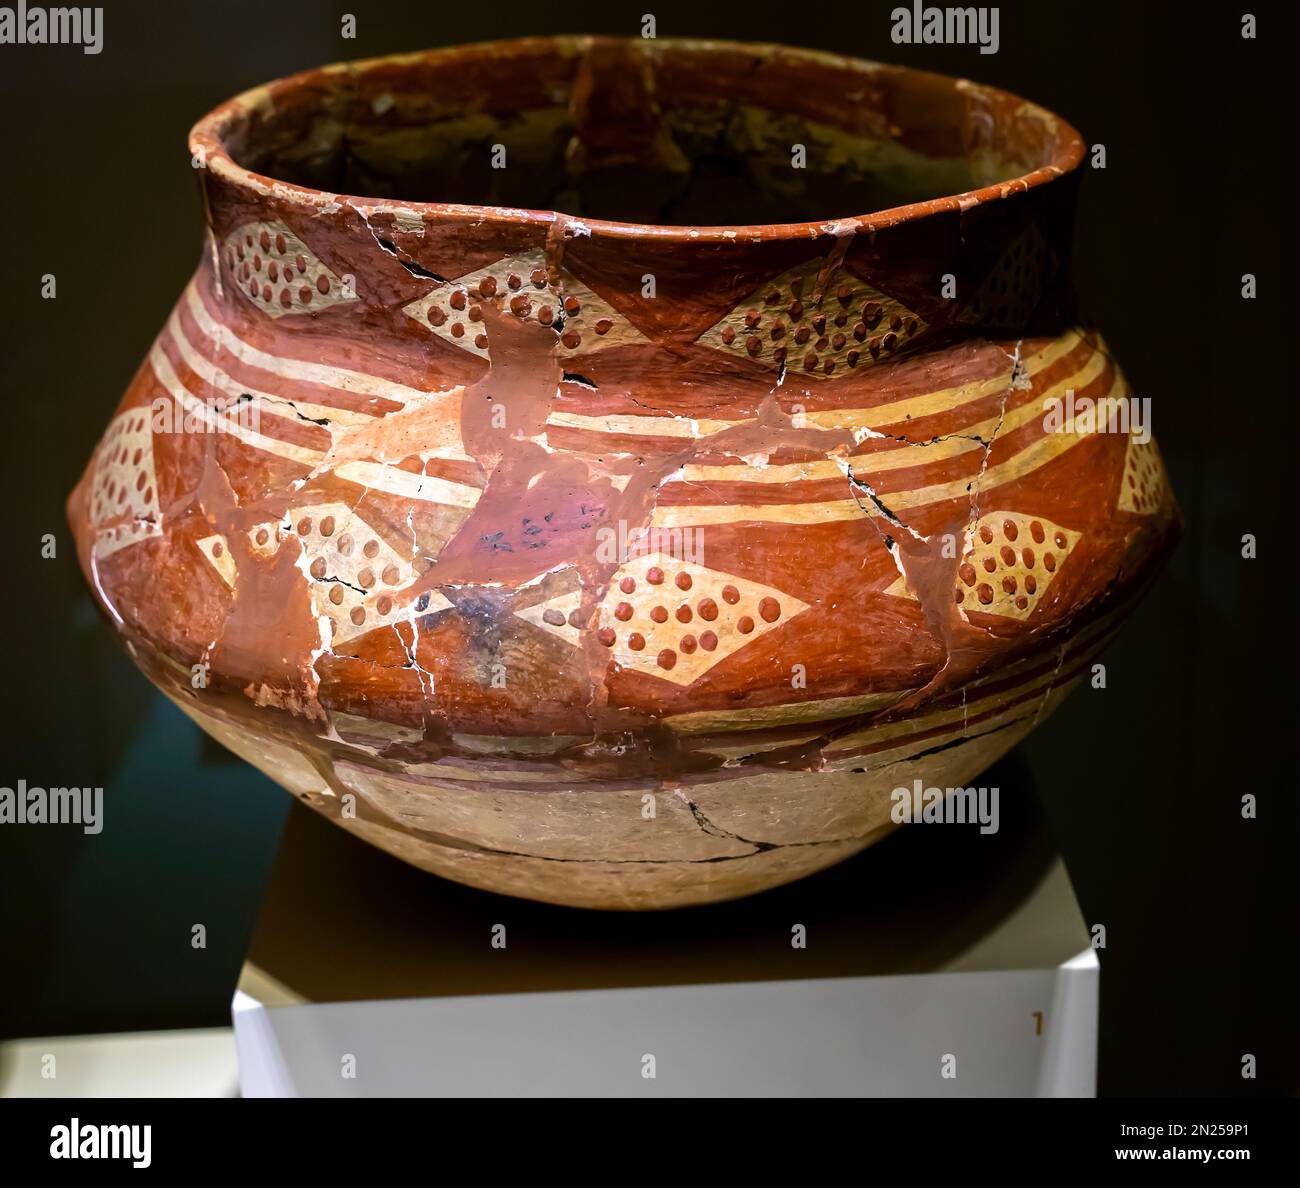 Prunkvolles ovales Gefäß. Mitte des 6. Jahrtausends v. Chr. Anatolien. Museum der anatolischen Zivilisationen Ankara Türkei Stockfoto